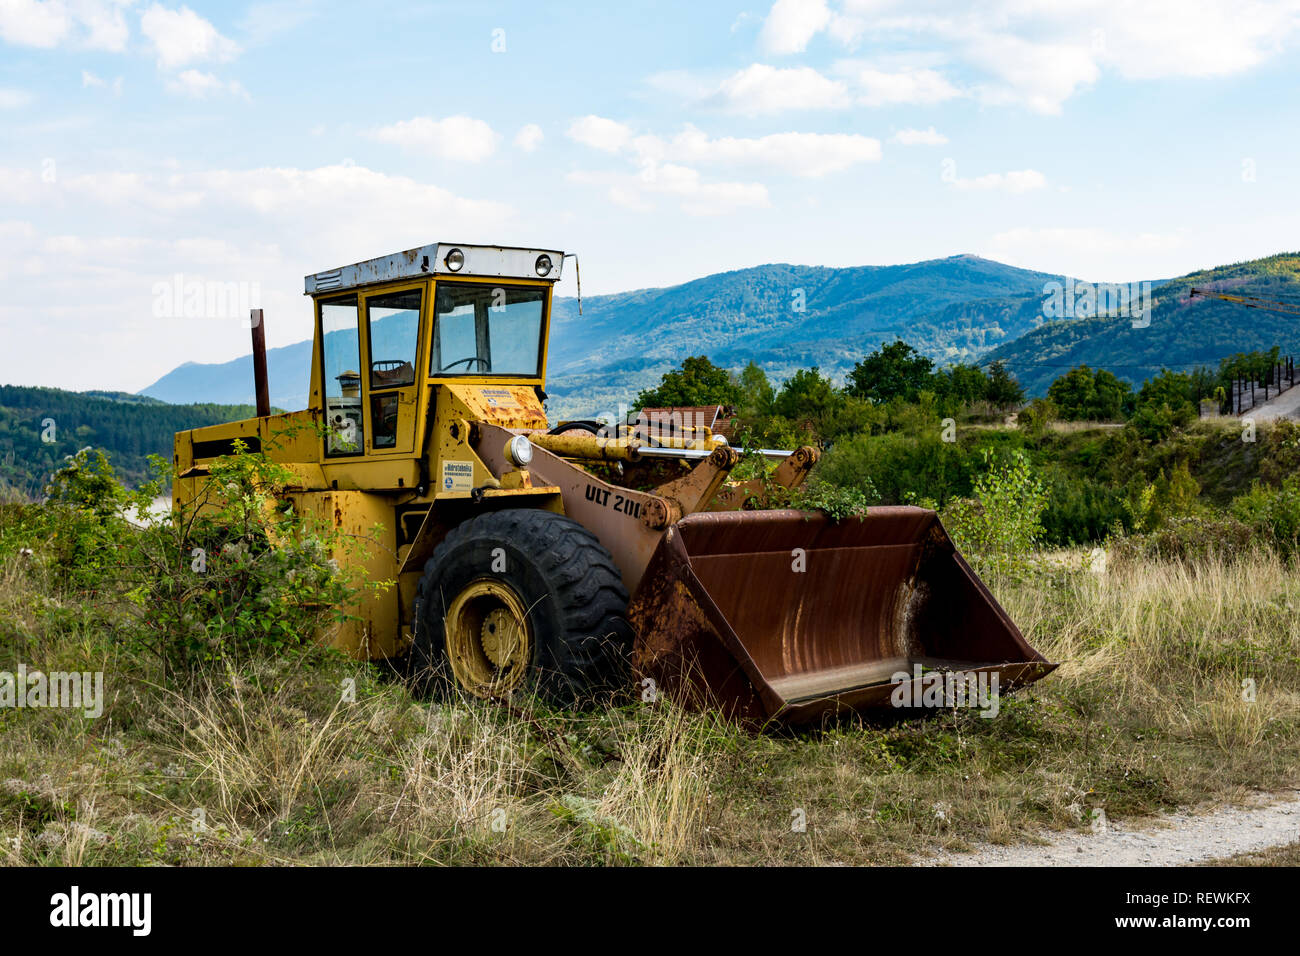 Viejos abandonados excavadora amarilla rota, cerca del lago Zavoj, sobre una montaña vieja. Oxidado y con los neumáticos dañados resistieron los dientes del tiempo. Foto de stock